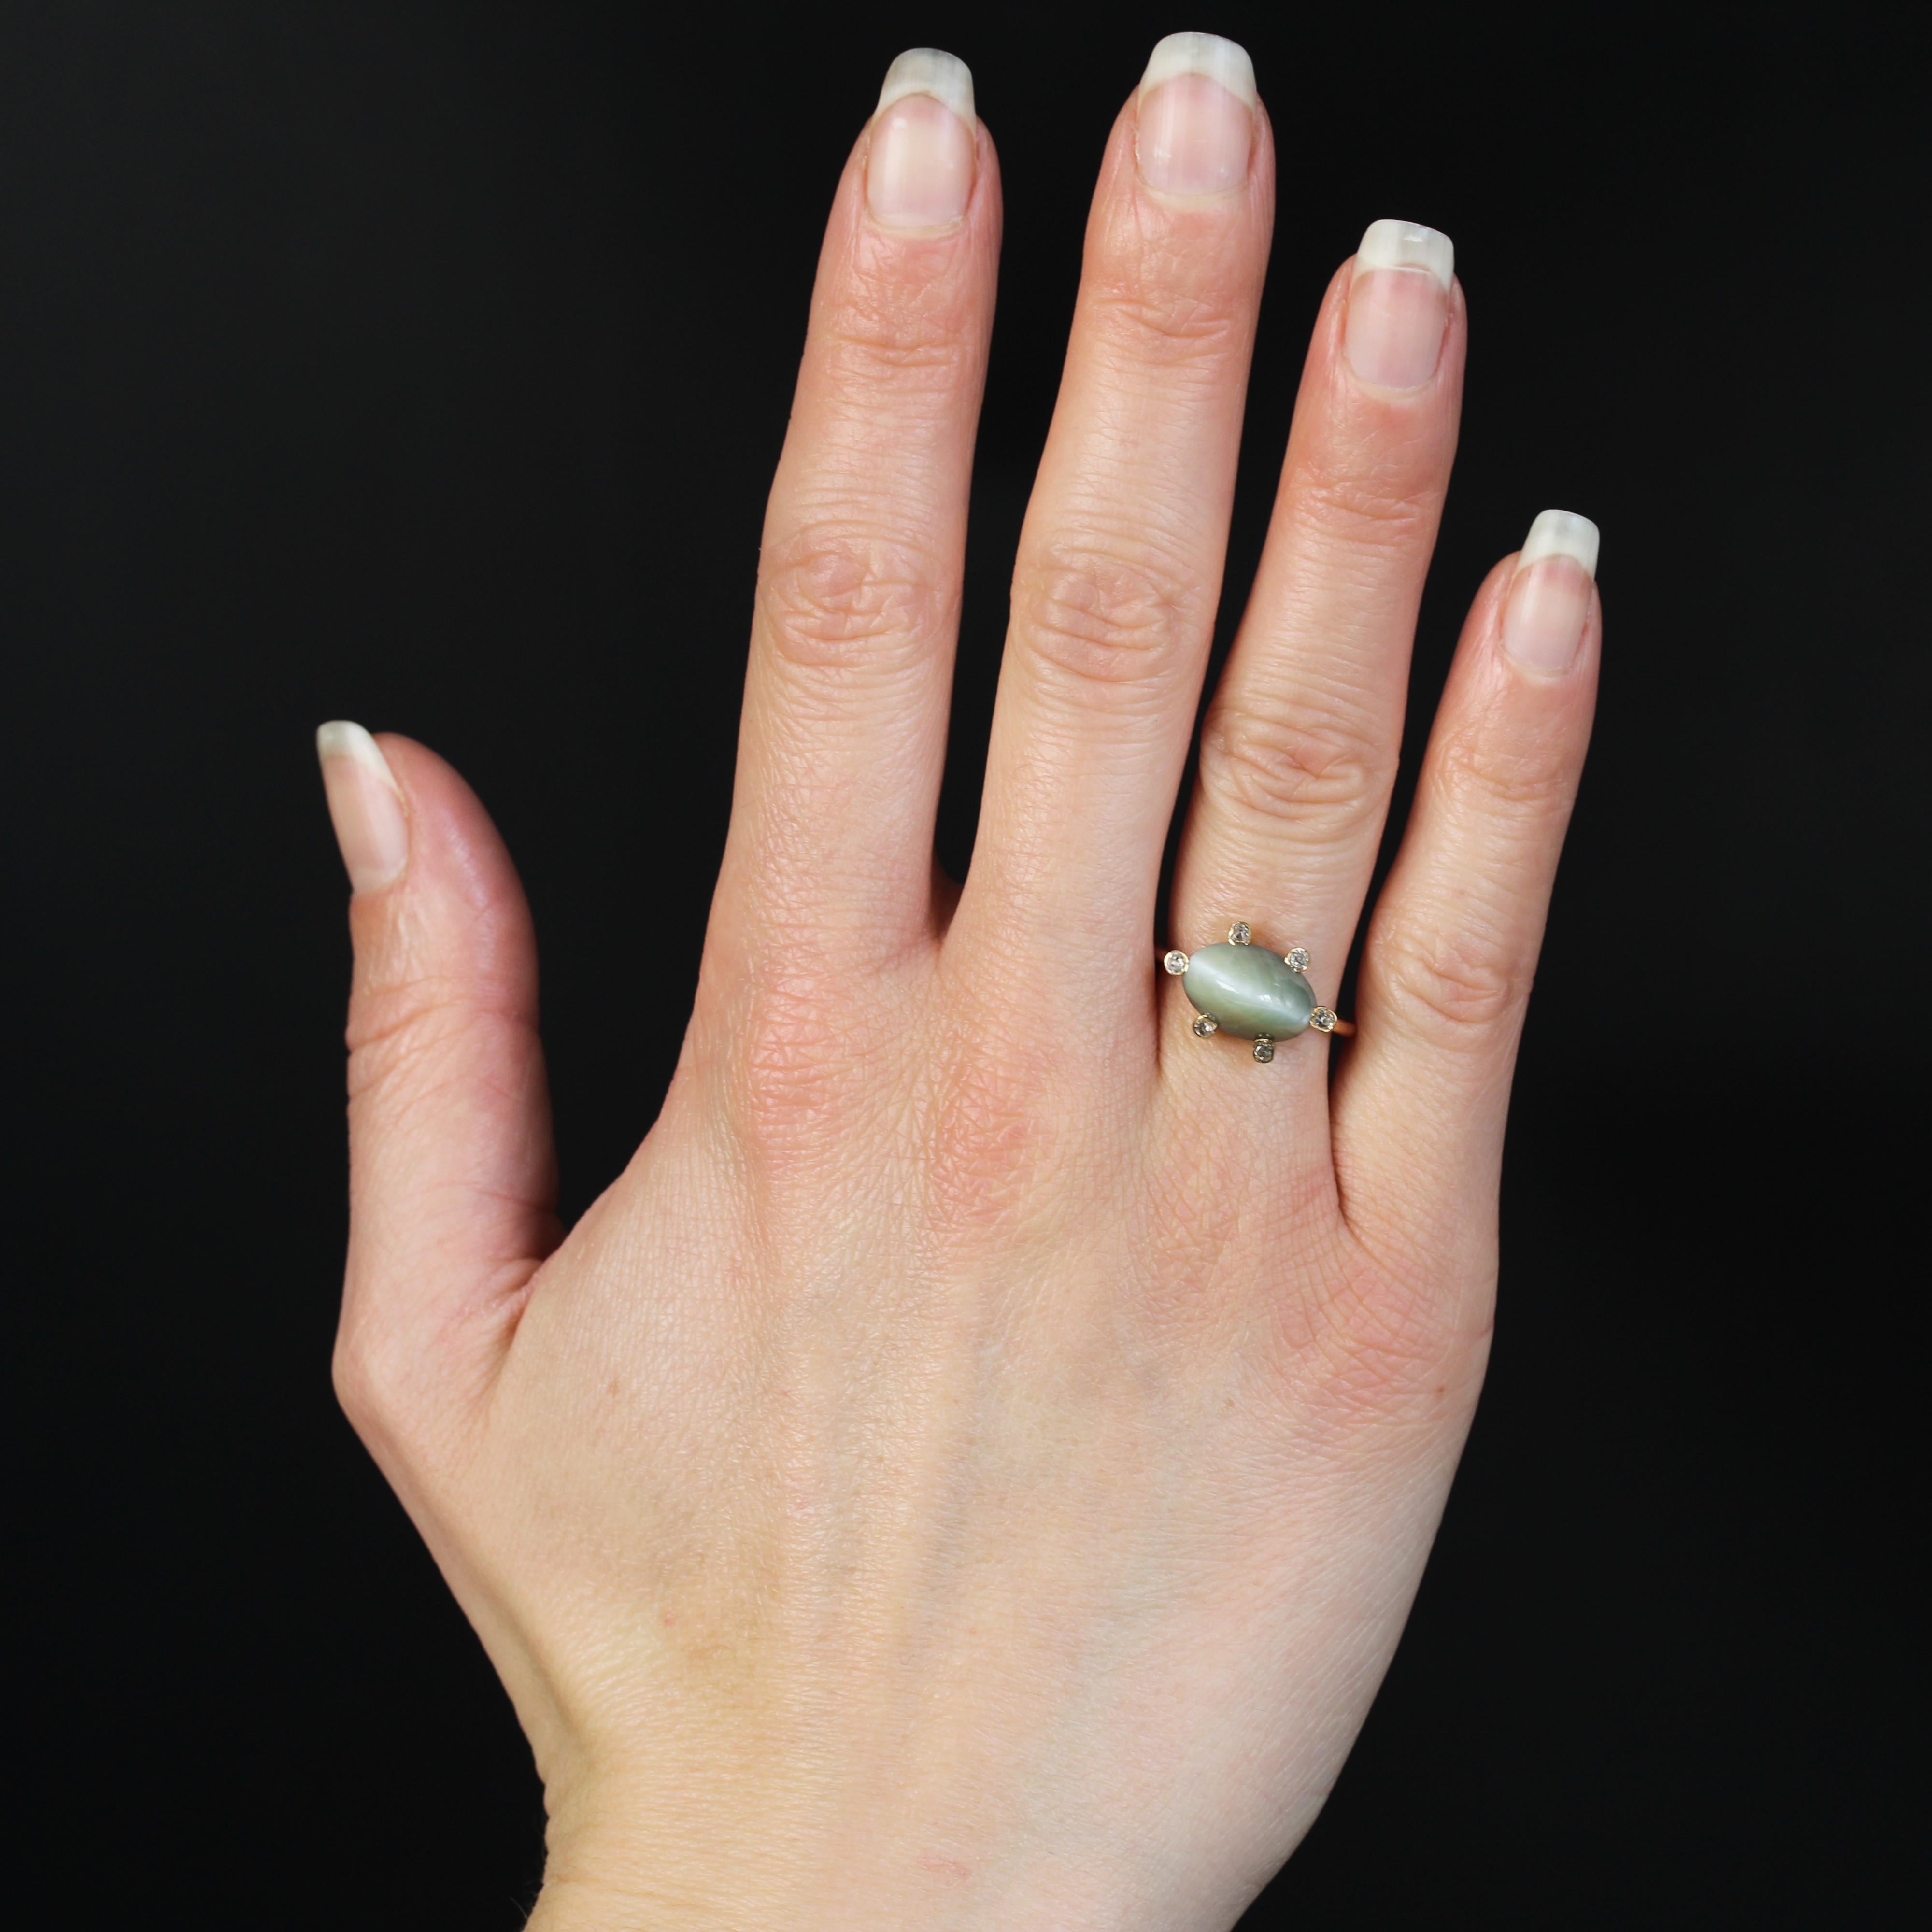 Ring aus 18 Karat Roségold.
Der Ring besteht aus einem runden Golddraht, der einen mit 6 Diamanten im Antikschliff besetzten Korb in breiten Krallen hält, in denen ein Chrysoberyll im Zuckerhut-Schliff sitzt.
Gesamtgewicht des Chrysoberylls: ca.